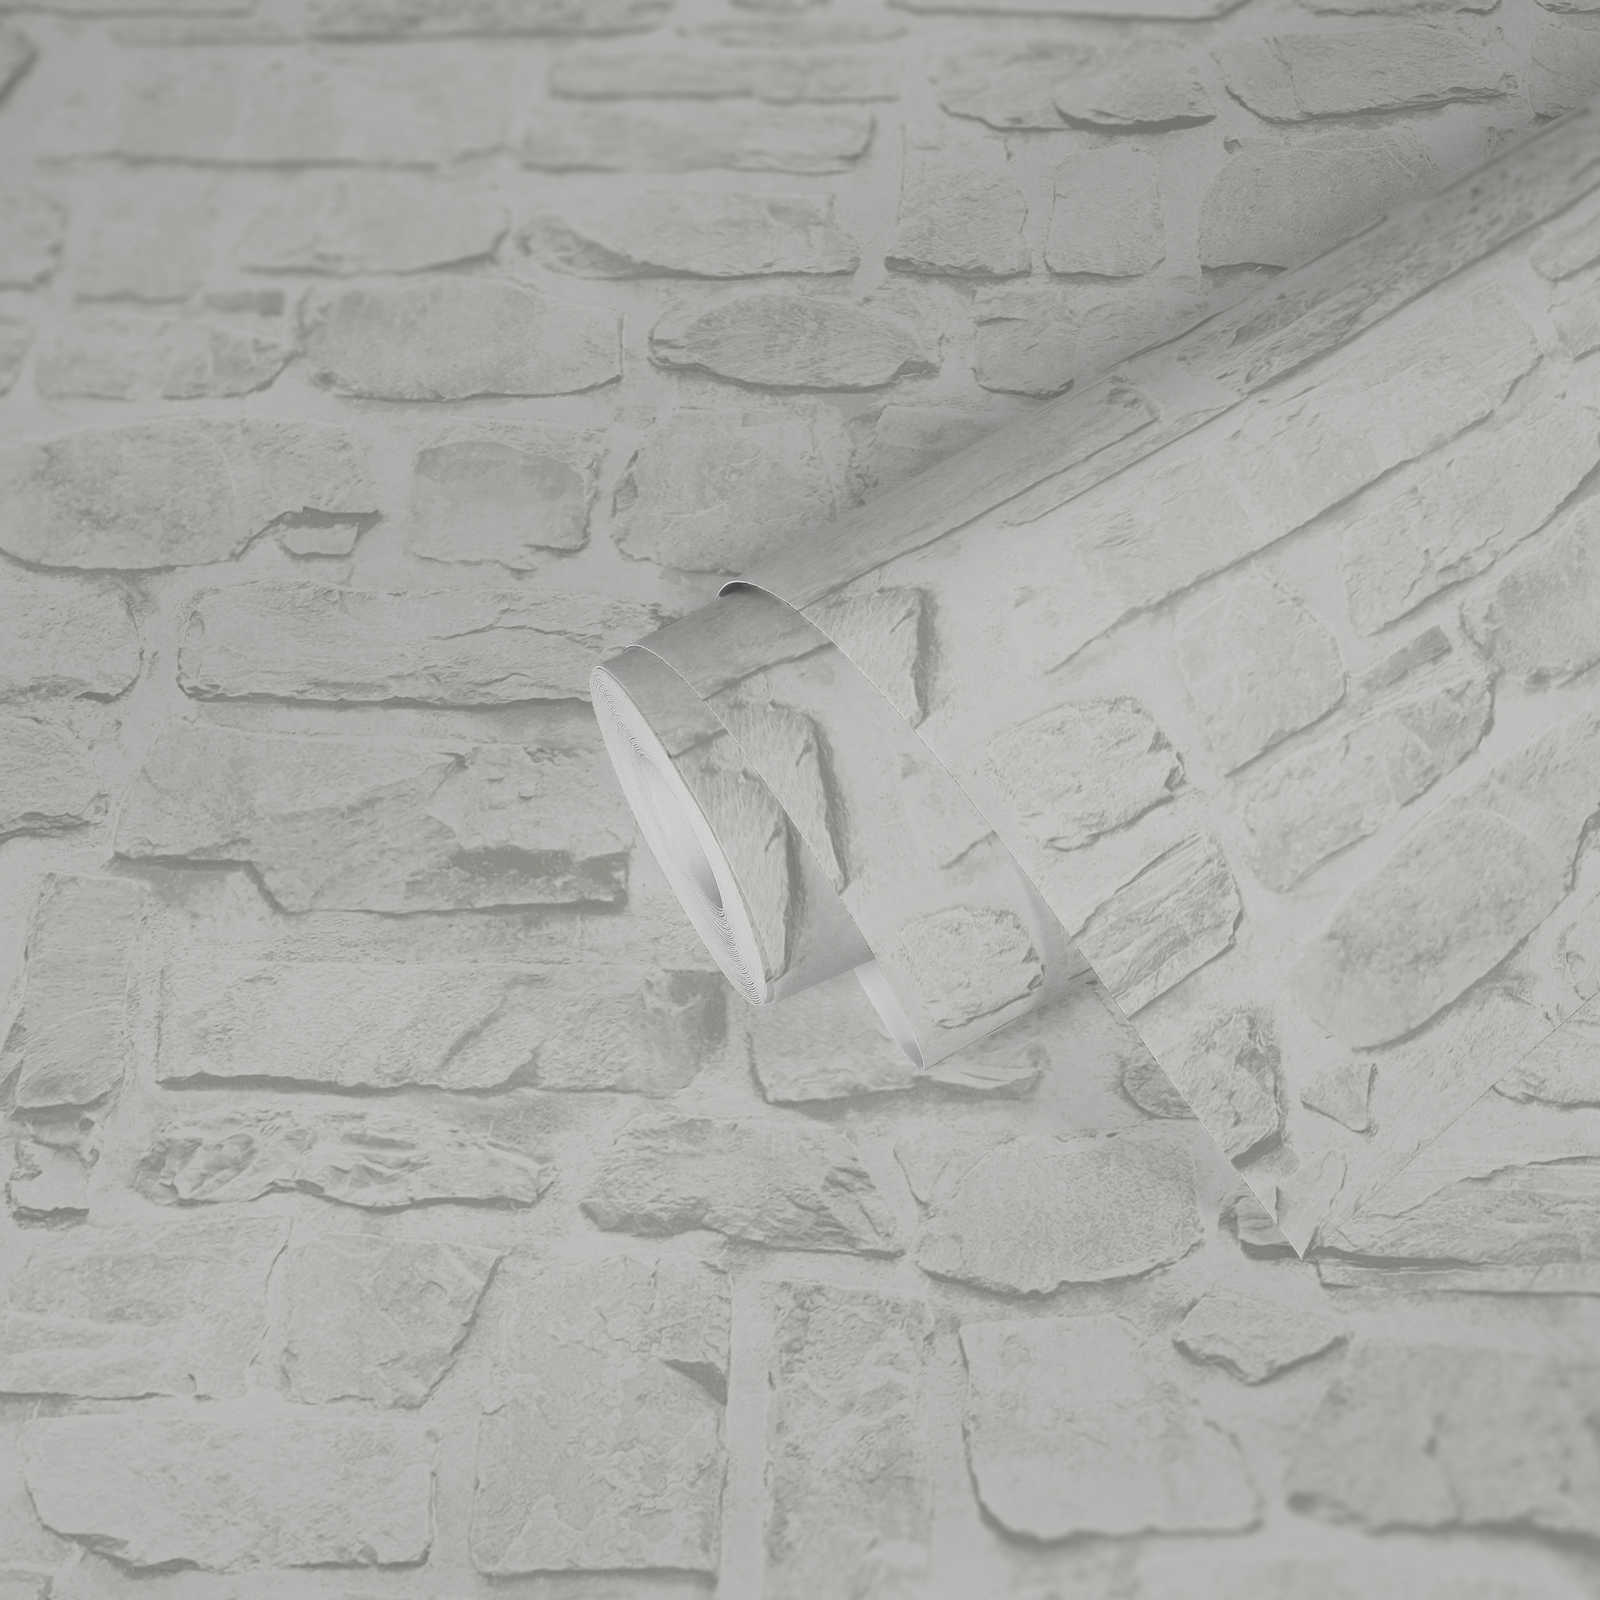             Papel pintado autoadhesivo | Aspecto de piedra blanca con óptica 3D - Blanco, Gris
        